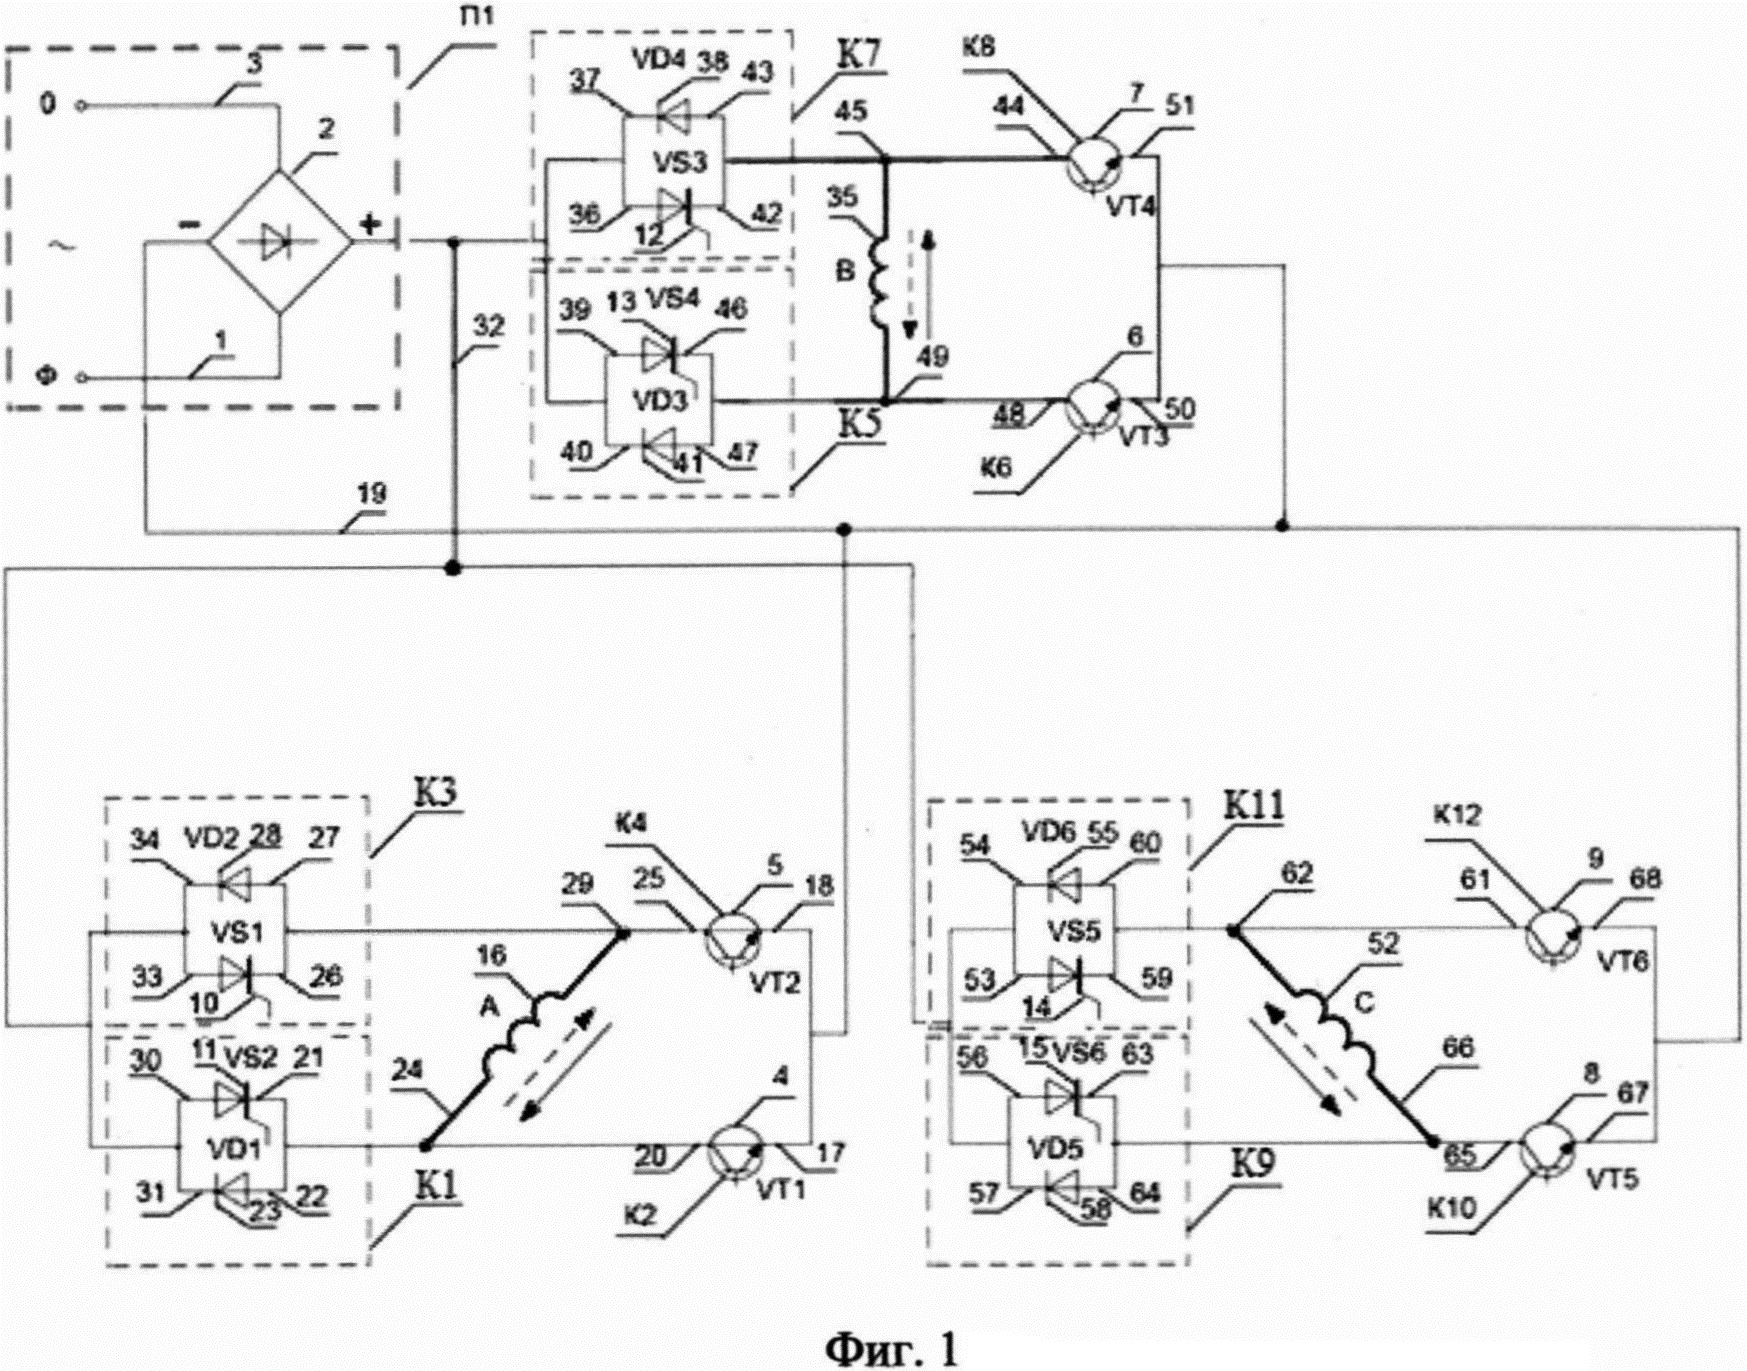 Реверсивное полупроводниковое устройство регулирования скорости трехфазного асинхронного электродвигателя